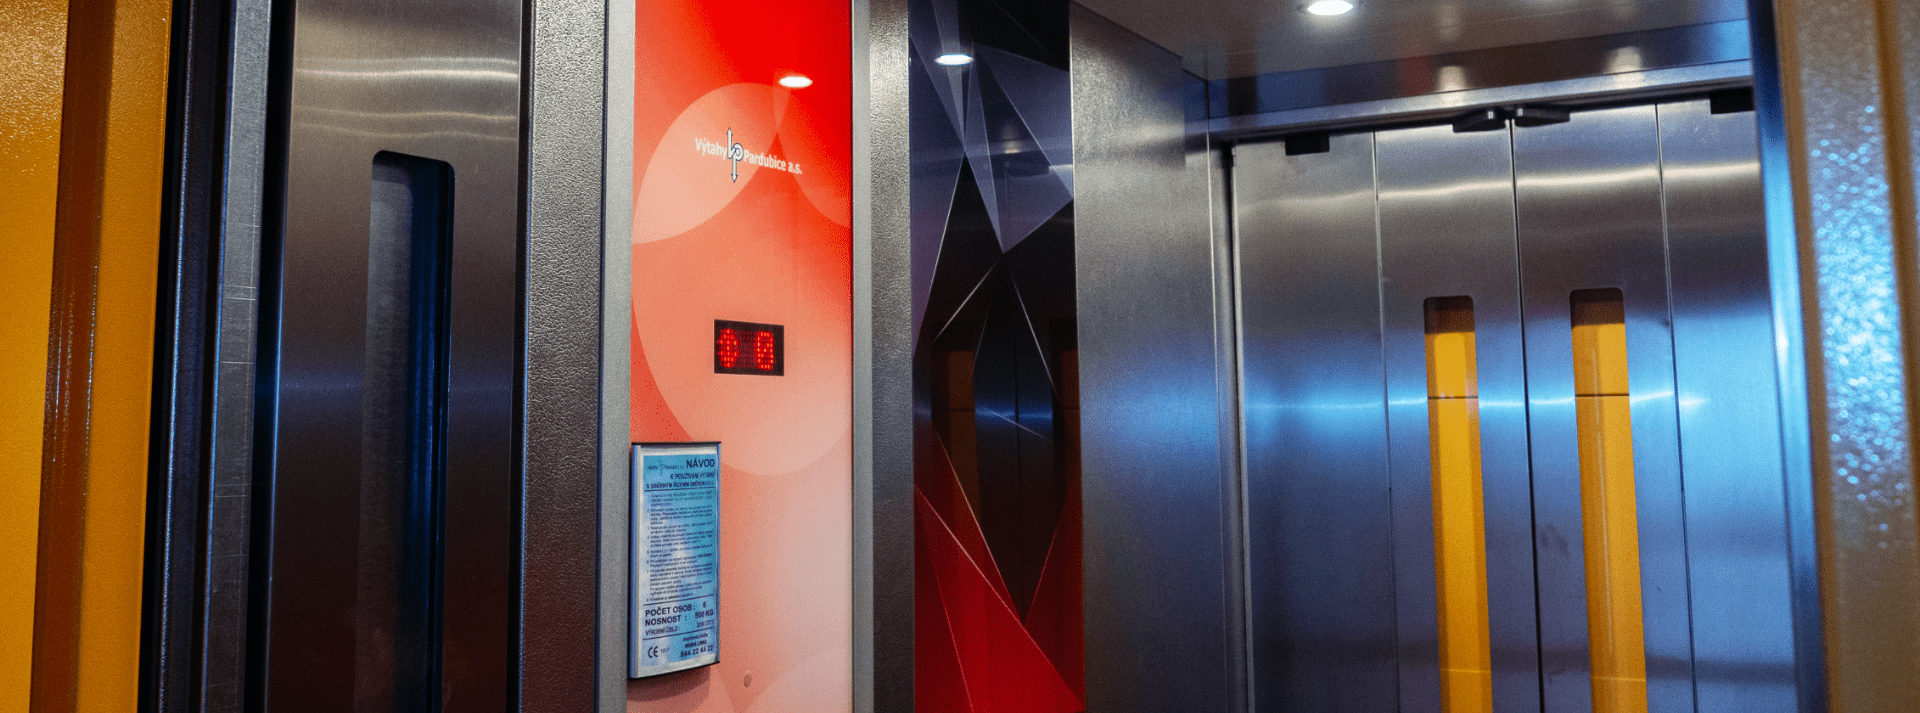 Kabiny výtahů